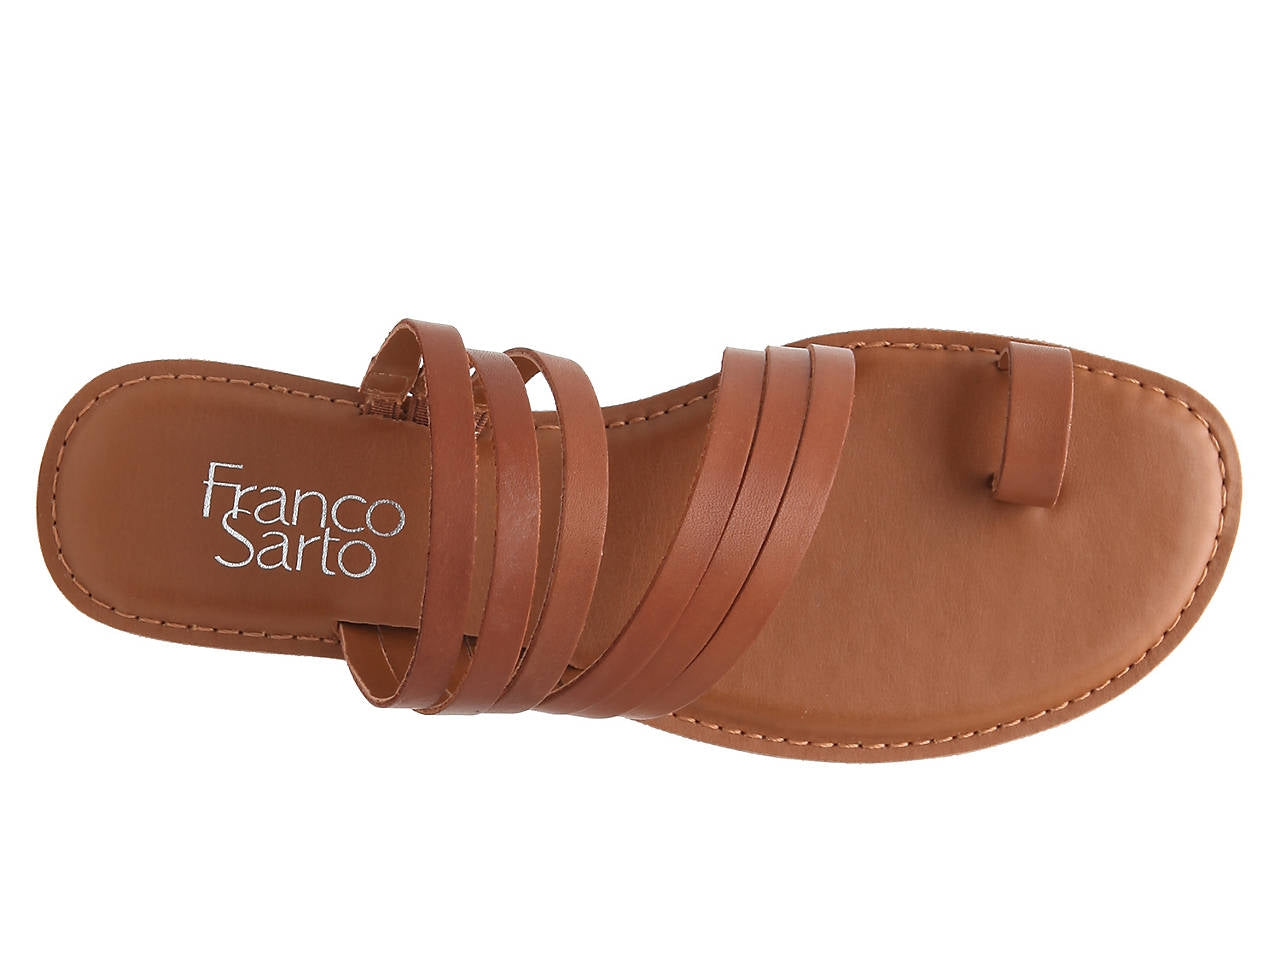 Giuseppe Light Brown Leather Franco Sarto Sandal